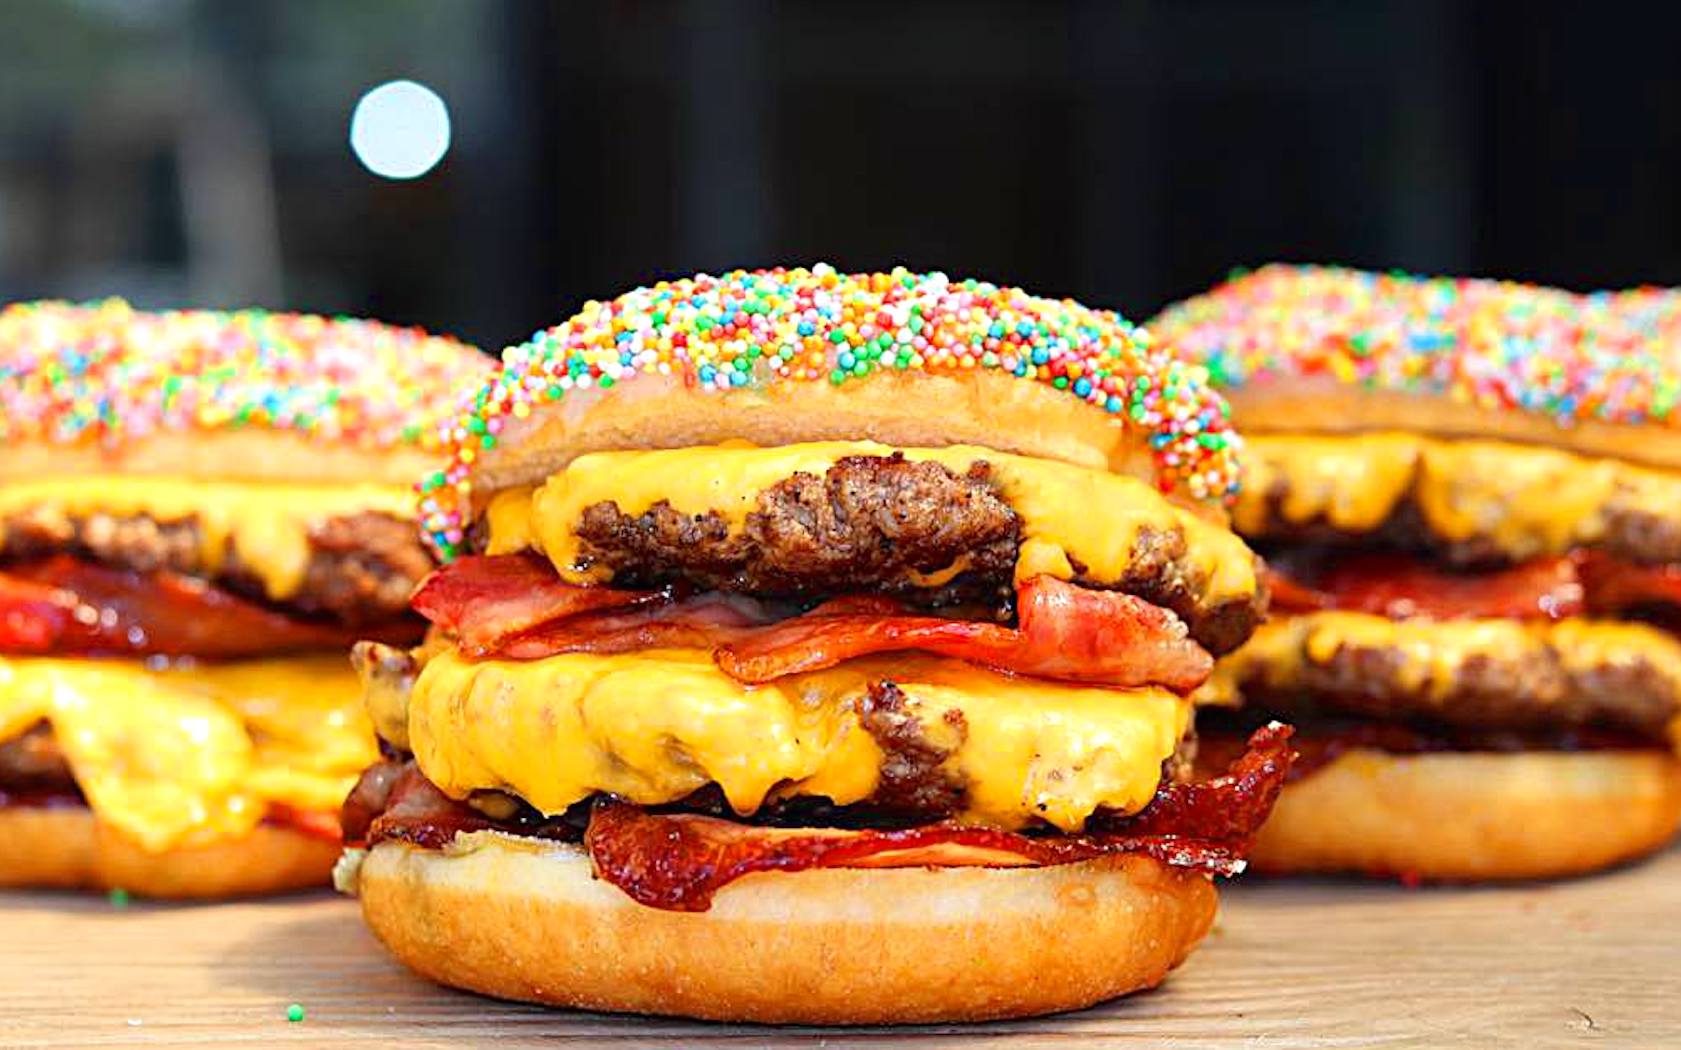 Fairy Bread Burger: Sydney's Created An Absolutely Cursed Burger